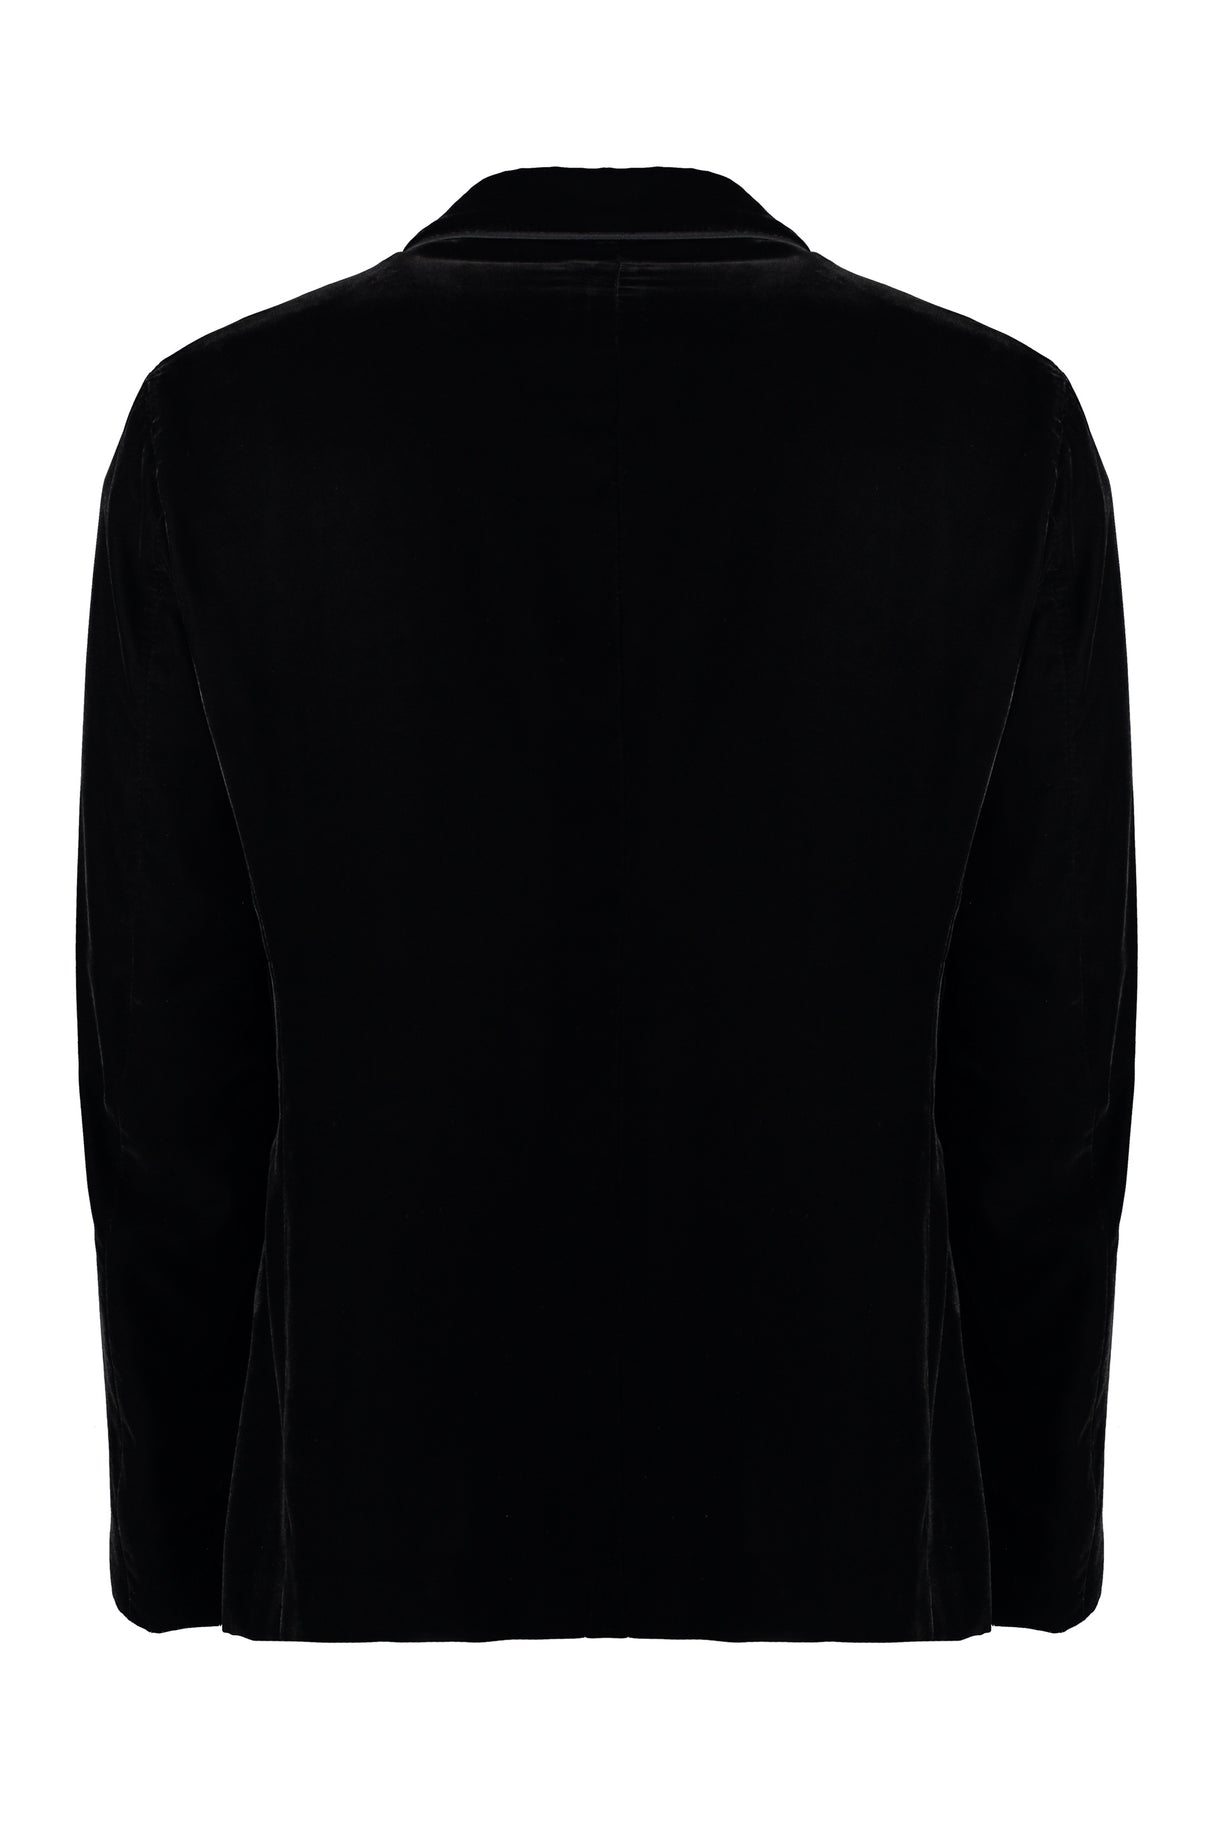 FW23シーズンの黒の男性用シングルブレストベルベットジャケット